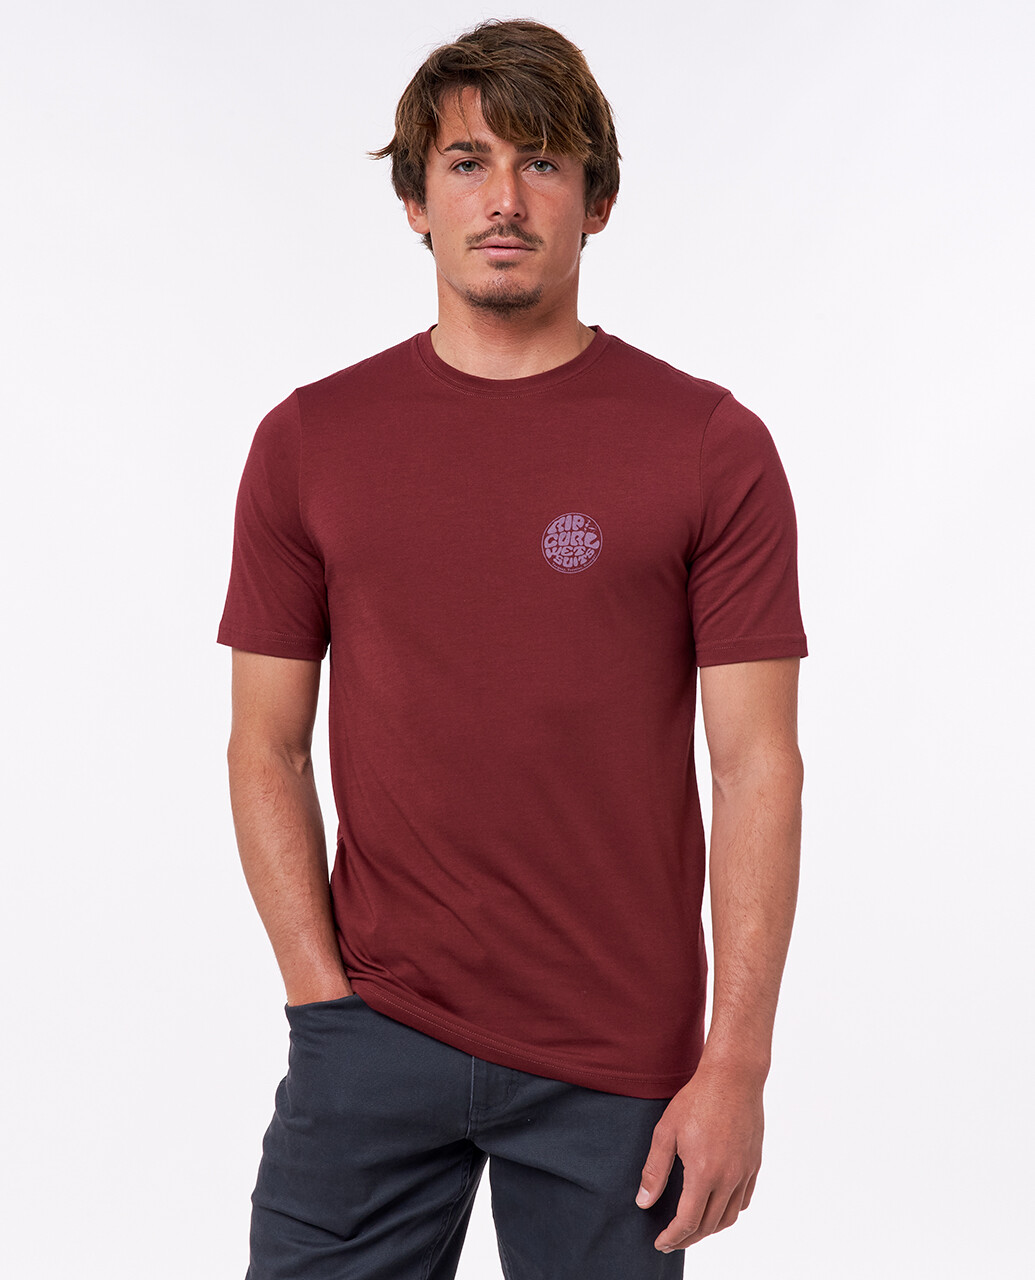 Curl UV Swim shirt for men - Icons of Surf - Maroon | UV-Fashions